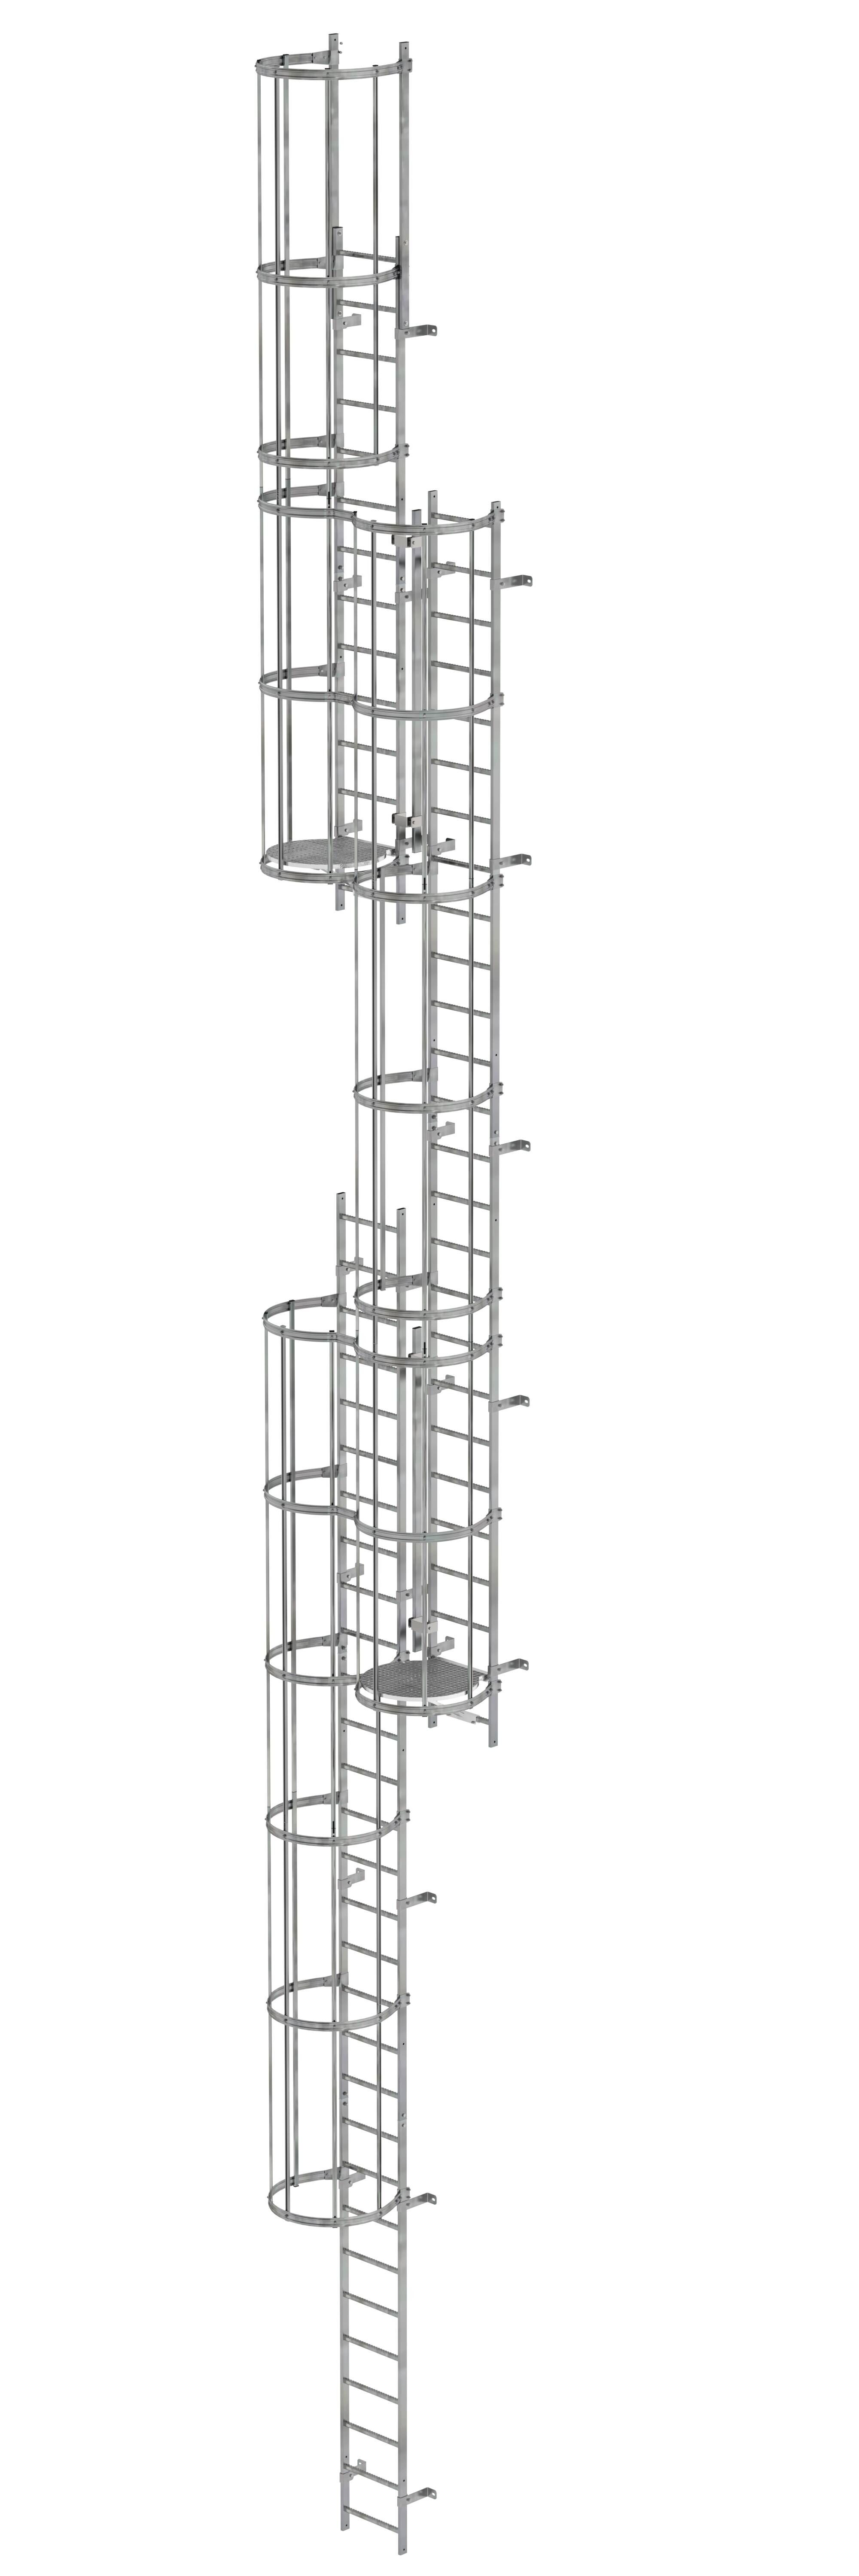 Mehrzügige Steigleiter mit Rückenschutz (Maschinen) Stahl verzinkt 15,20m